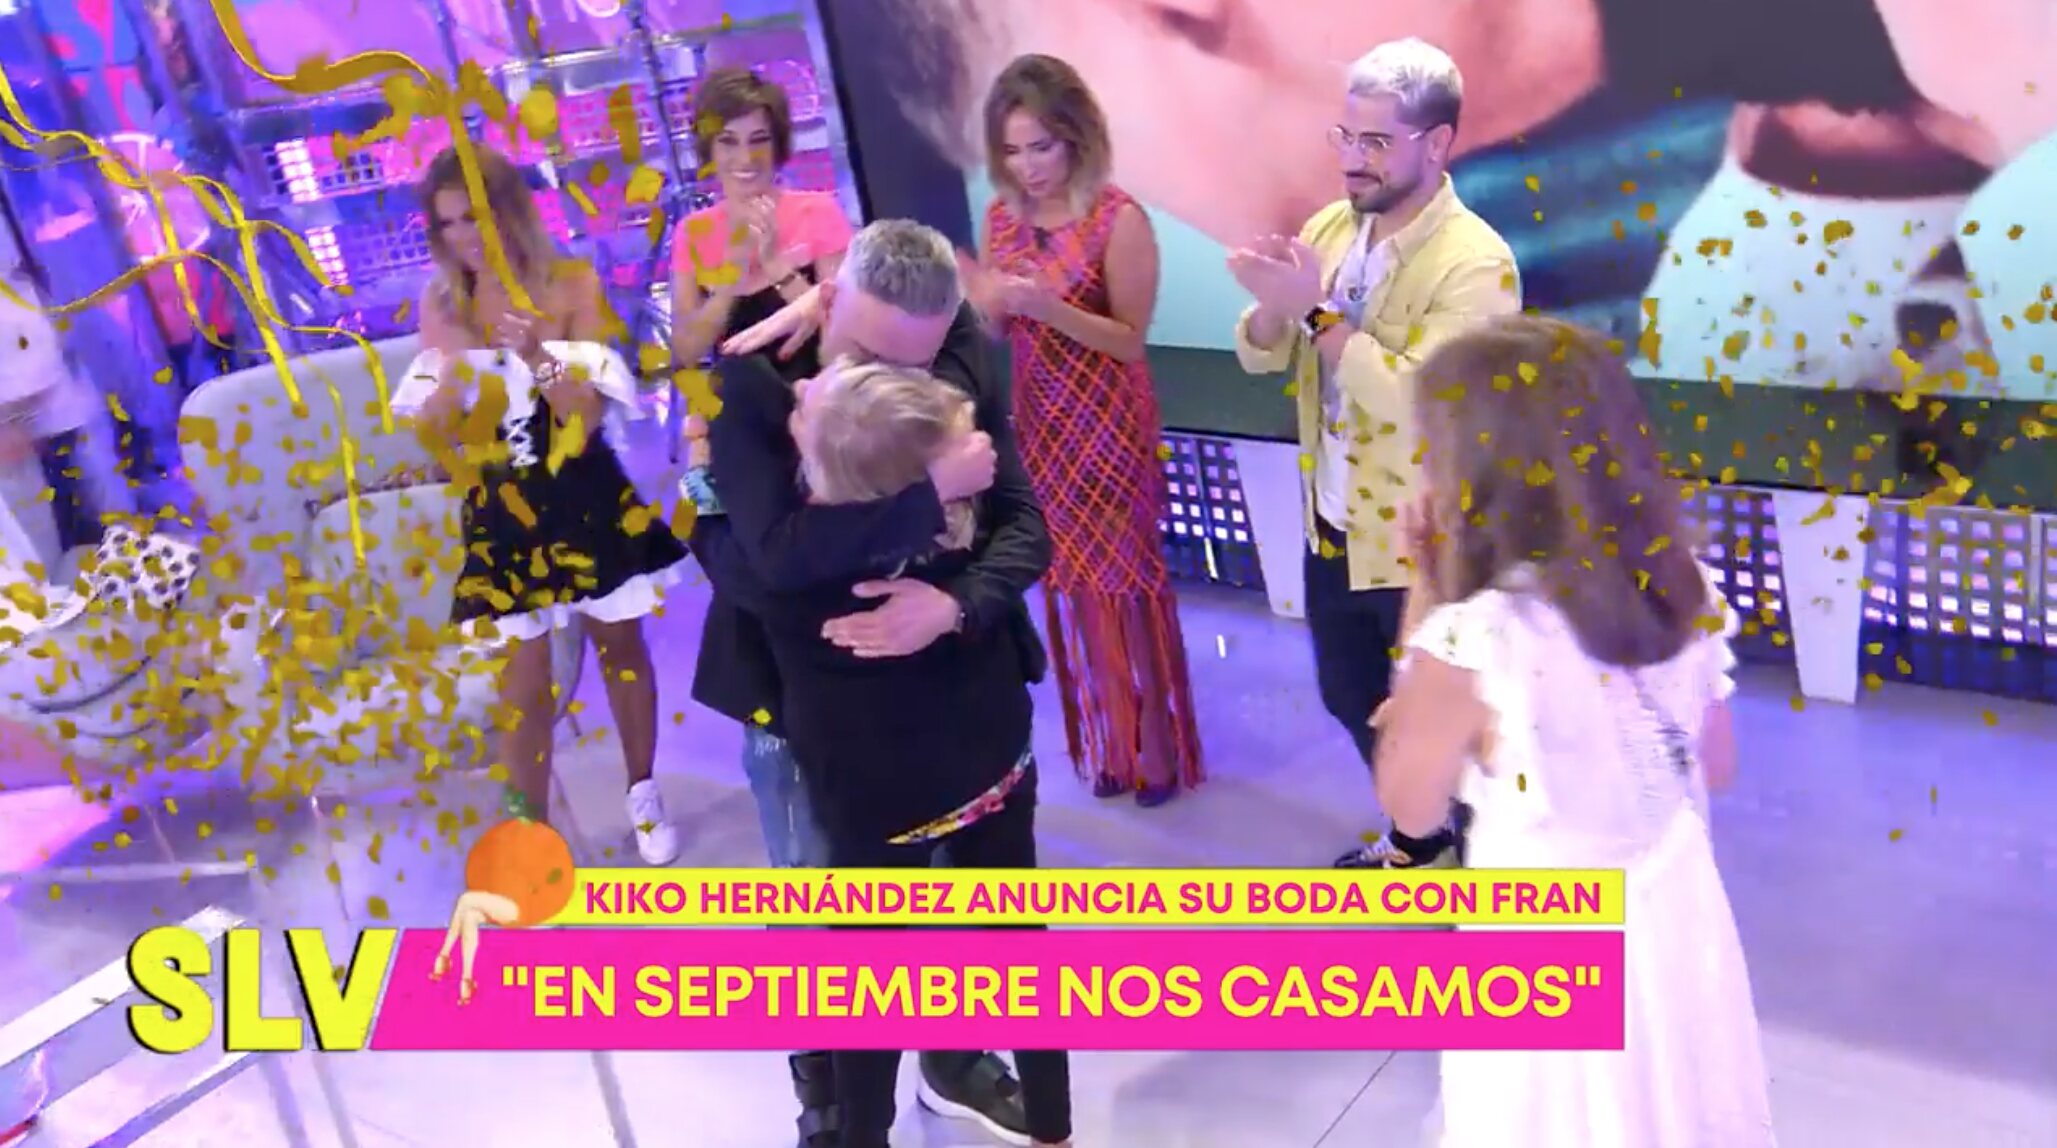 Kiko Hernández anunció que se casará con Fran Antón en septiembre en Melilla | Foto: Telecinco.es